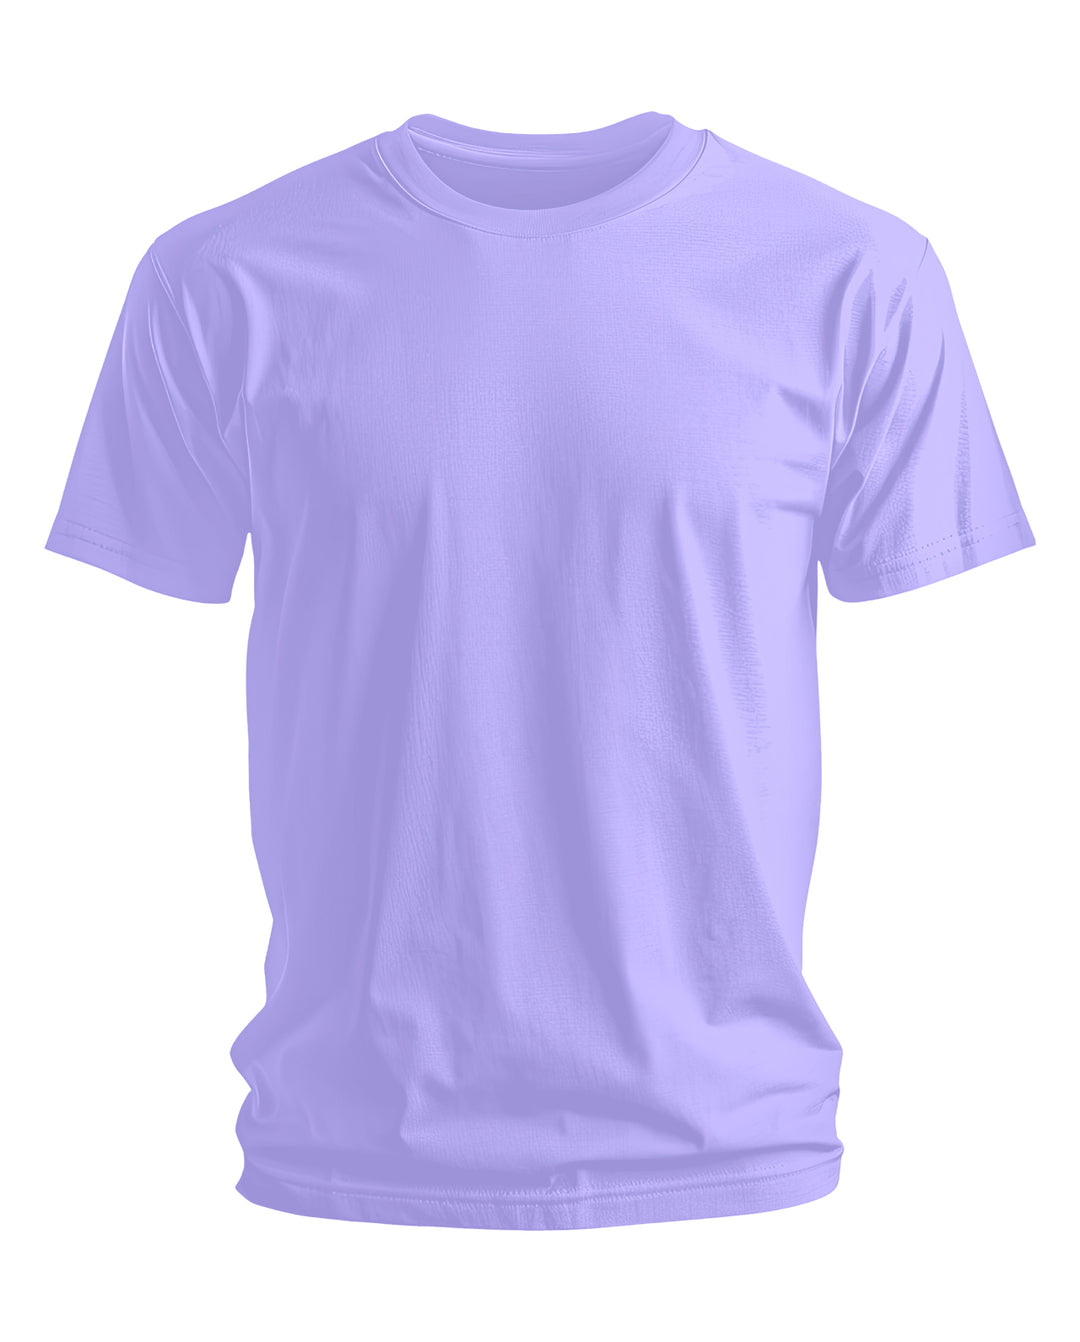 Trinizen Basics Supima Cotton T-shirt - Lavender